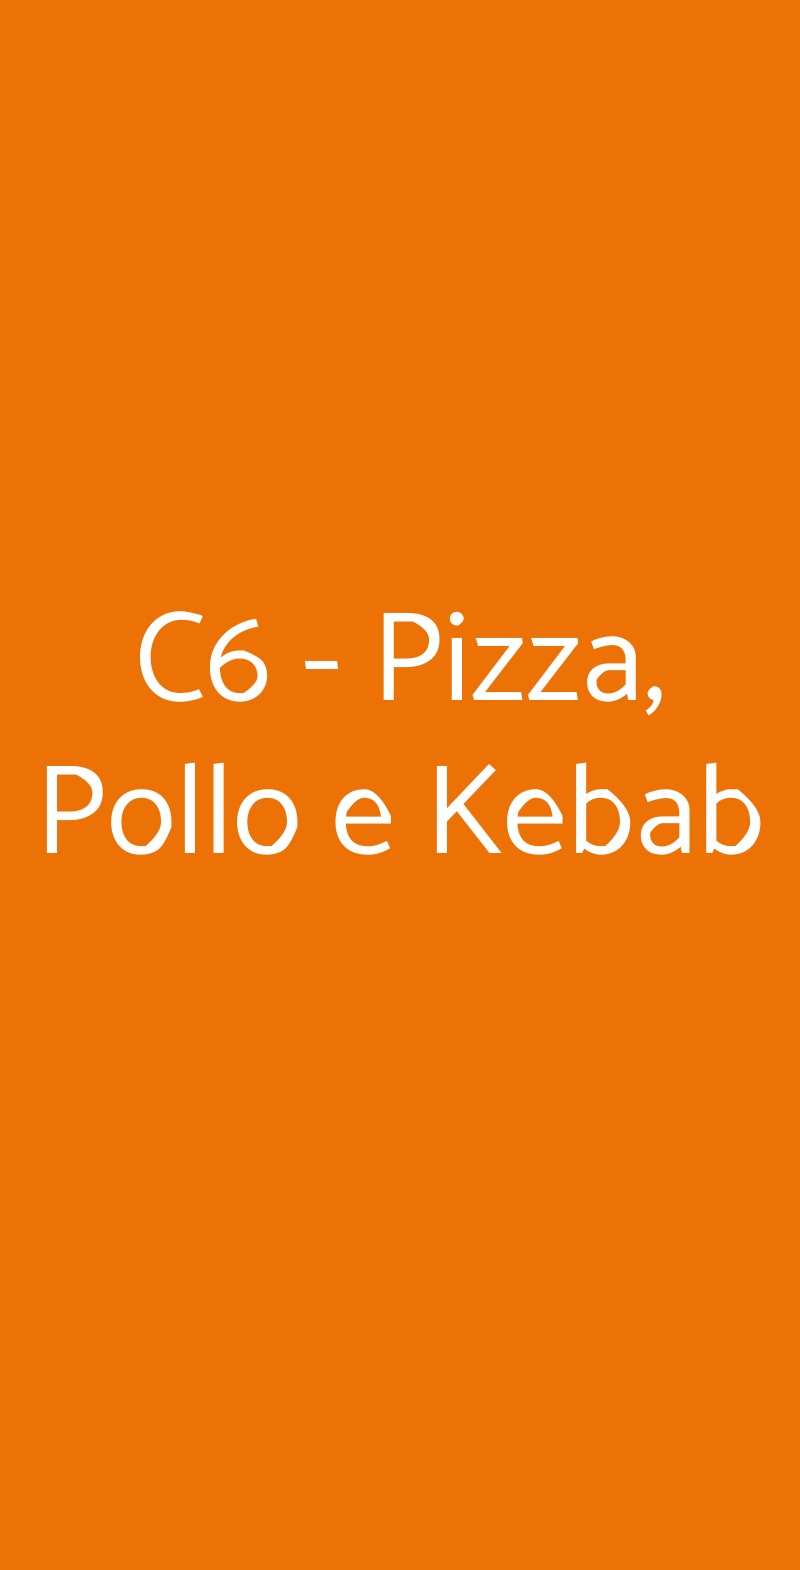 C6 - Pizza, Pollo e Kebab Palermo menù 1 pagina